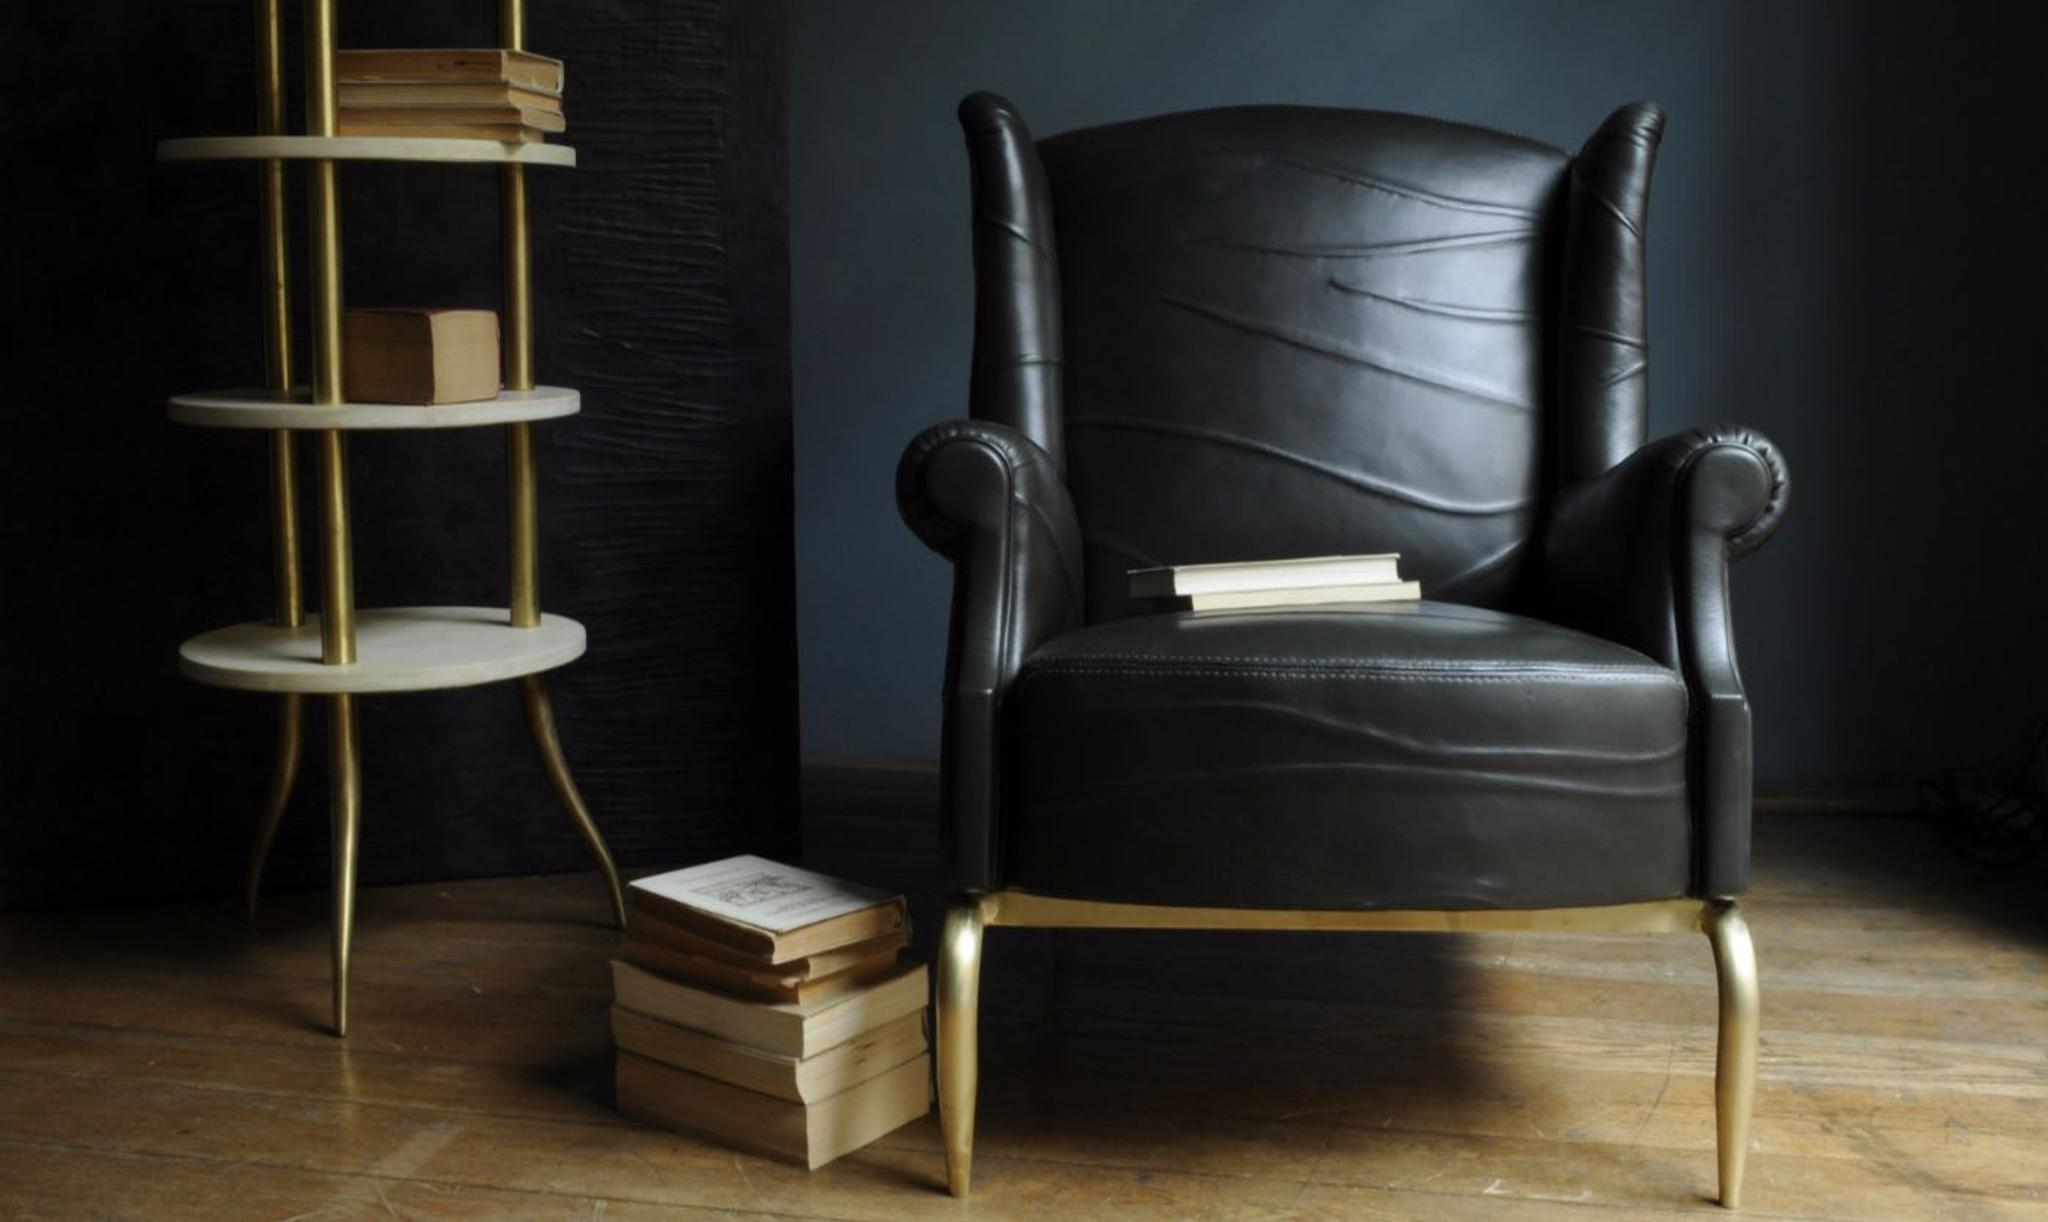 Estilo negro y dorado de Nb Milano con el espléndido sillón de cuero Folies y la estantería Nibiru 4 en latón natural y cuero pergamino